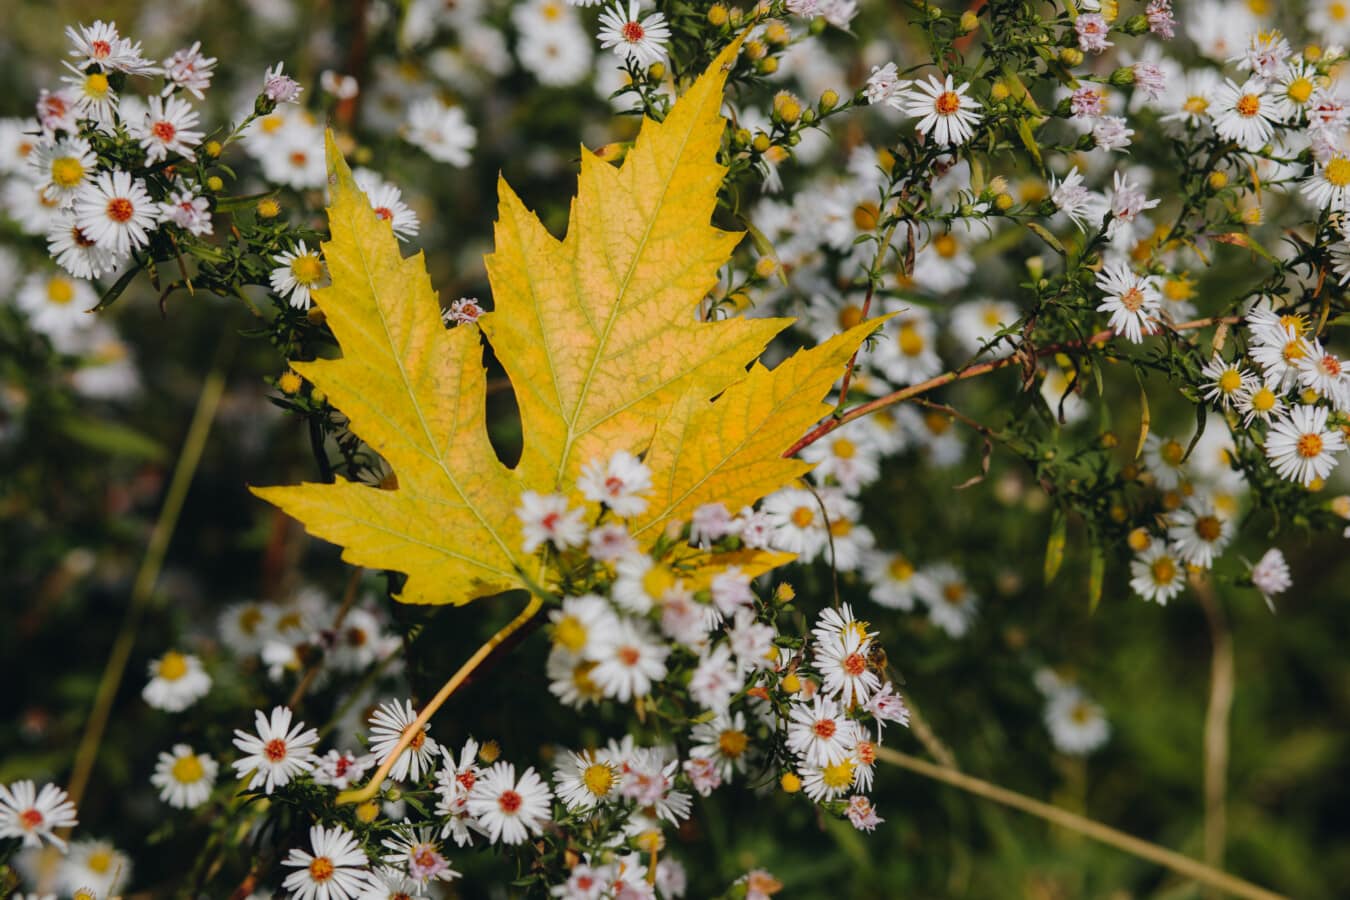 jesennej sezóny, žltkasto hnedé, krídlo, harmanček, divoká kvetina, príroda, flóra, rastlín, kvet, slnko